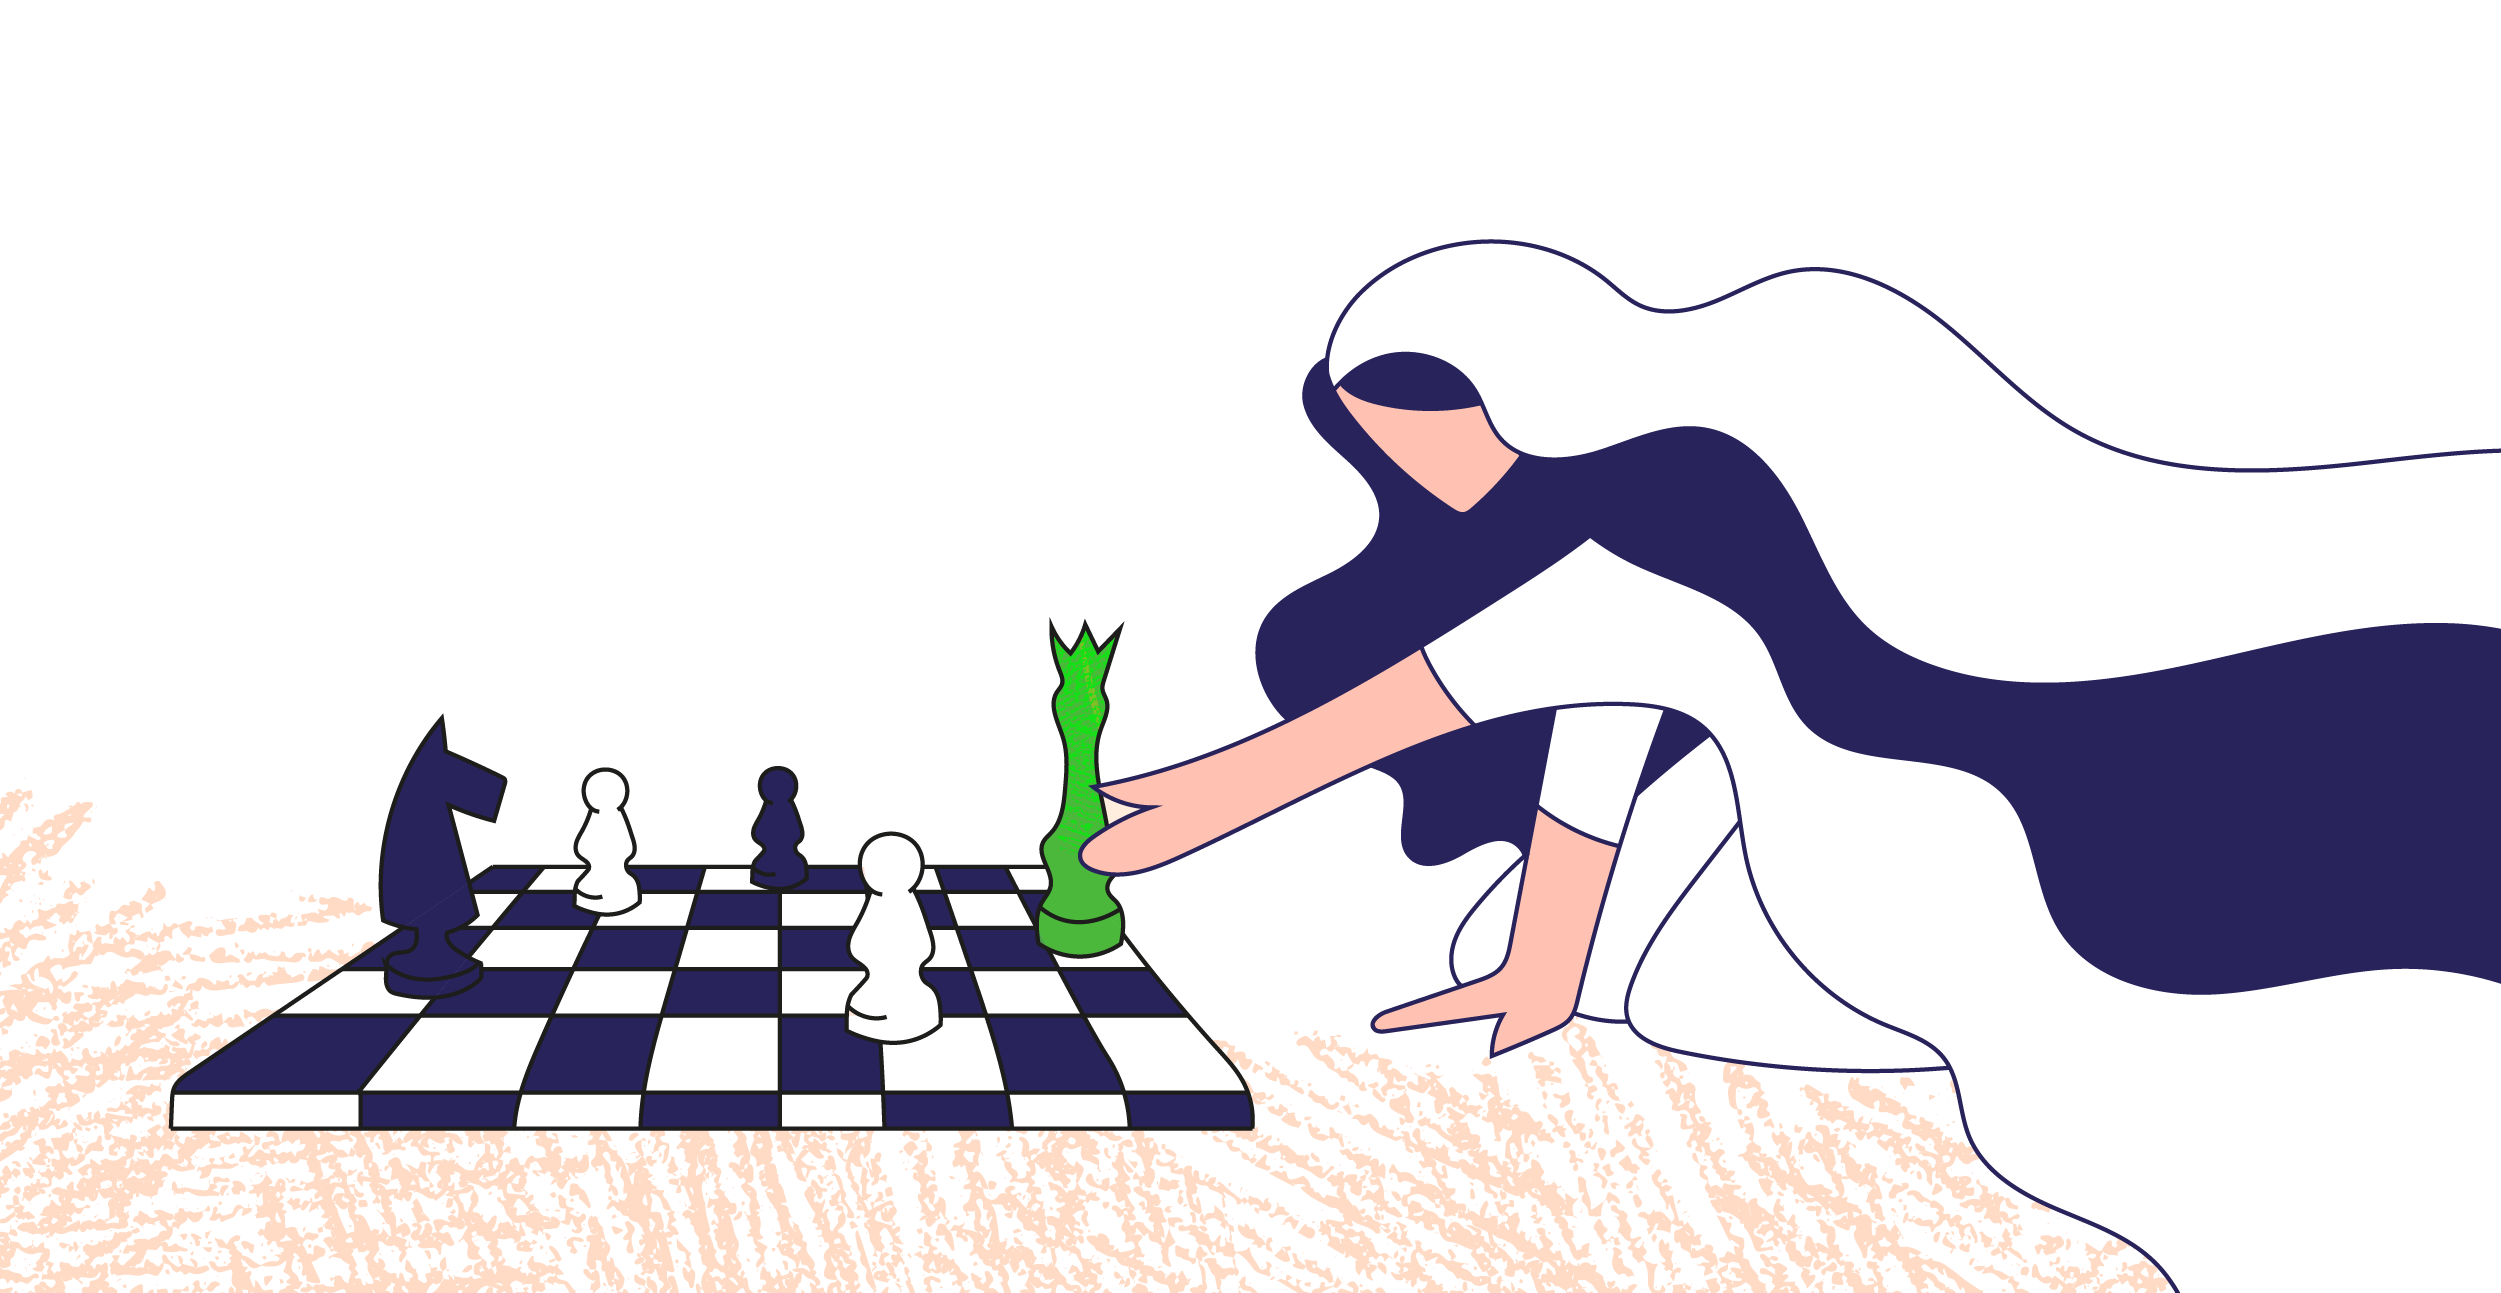 noiva movendo a rainha em um tabuleiro de xadrez